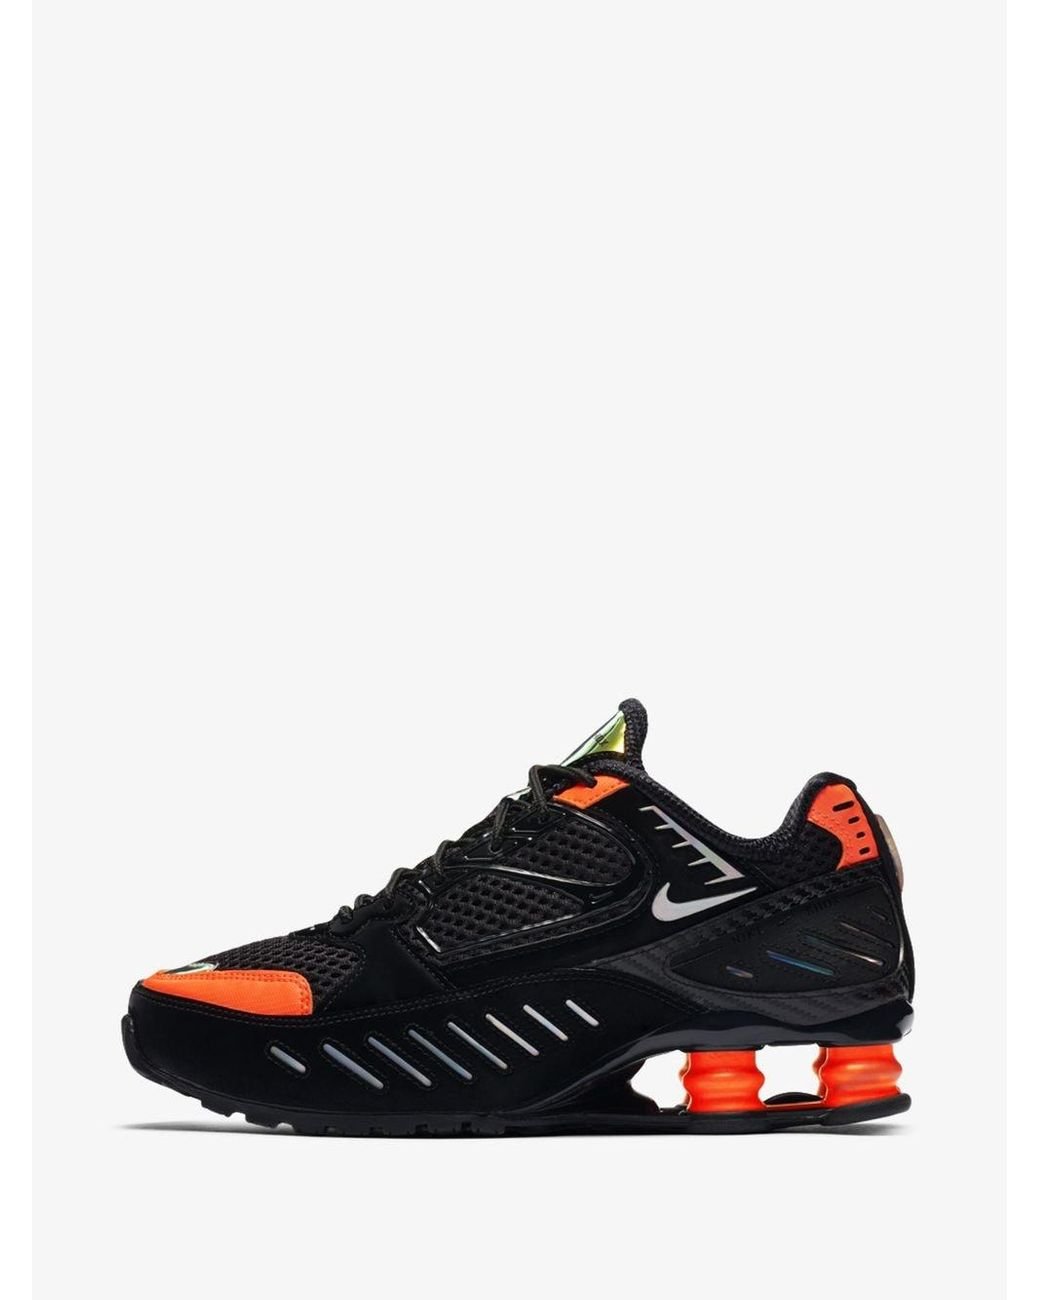 Nike Shox Junga Black Orange Trail Running Shoes 313830-081 Rare Men’s Size  15